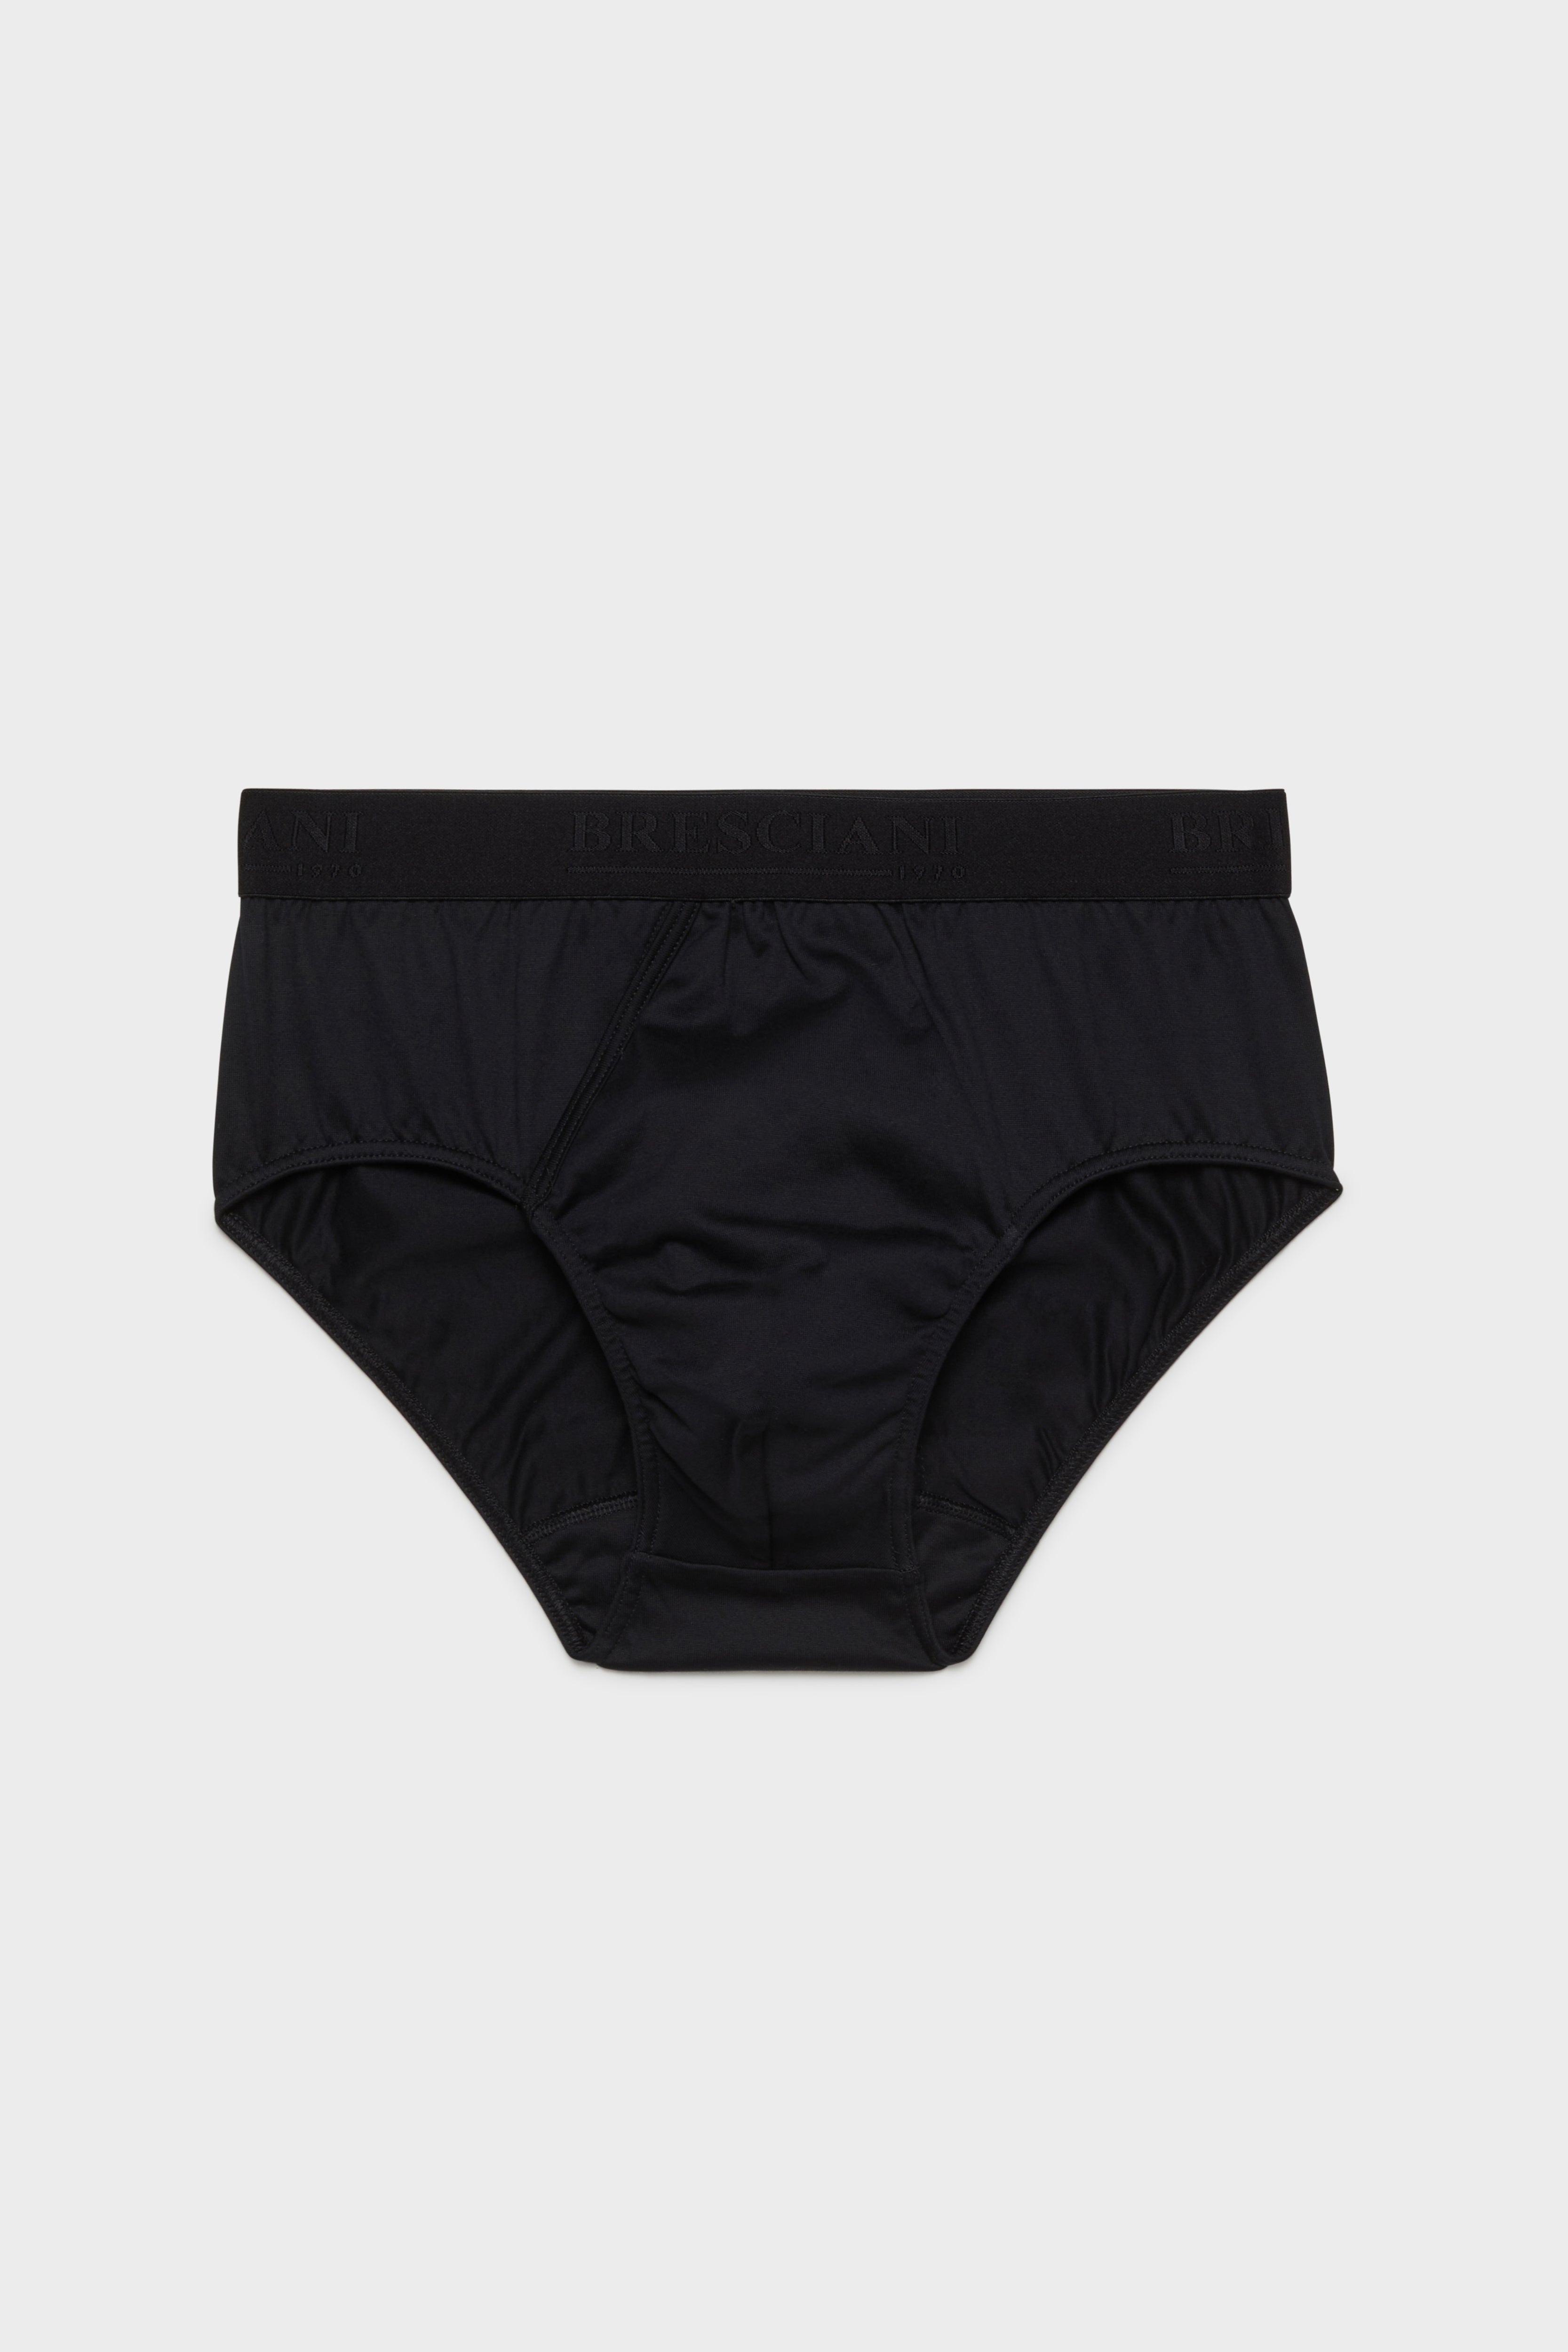 BRESCIANI - men's underwear . Briefs. Cotton. Black – Bresciani Shop